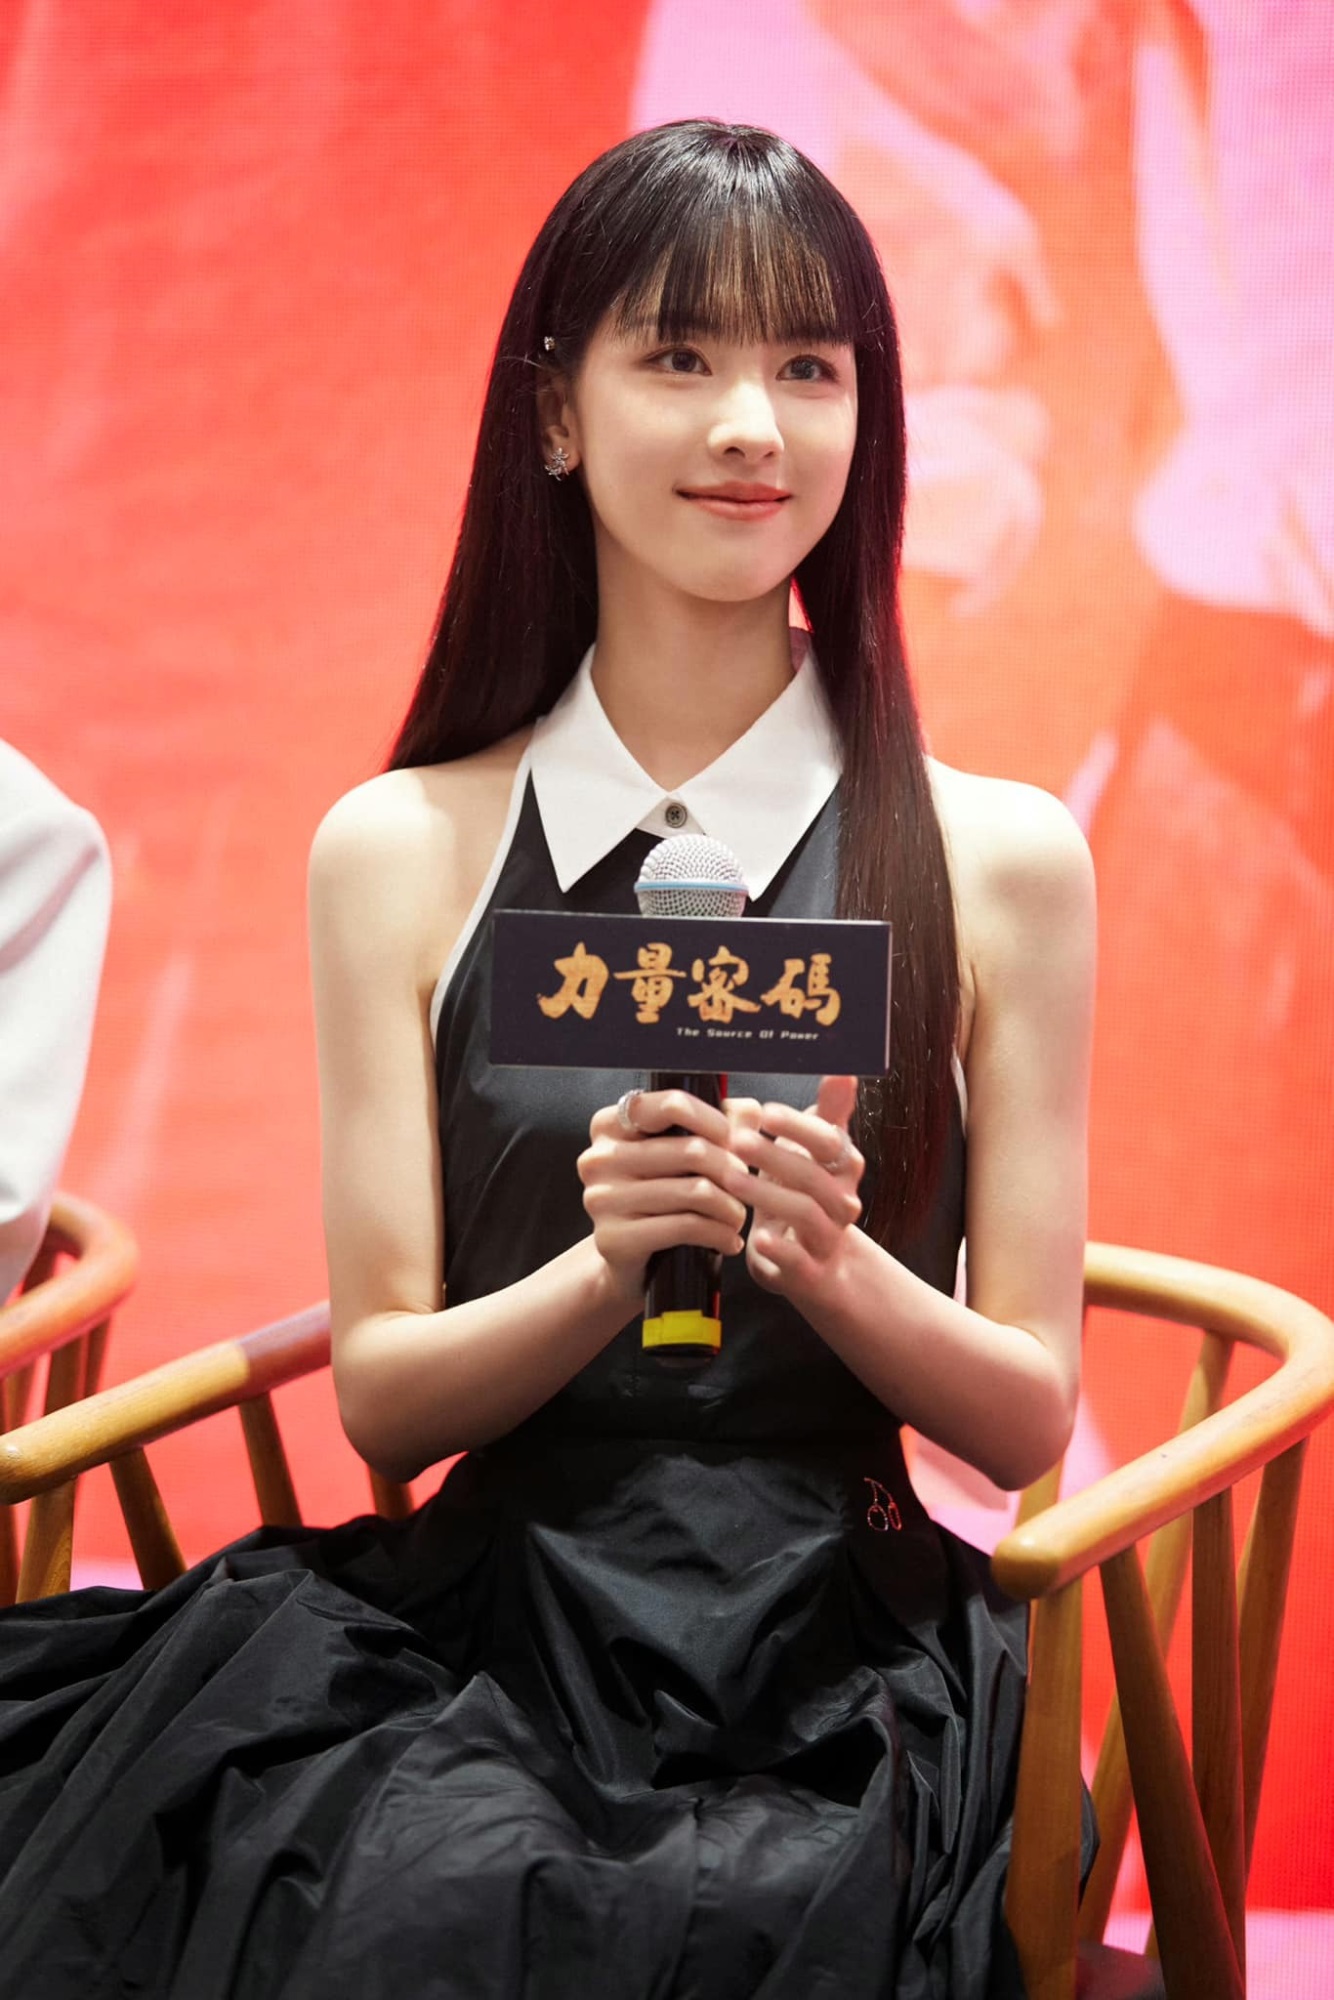 Tóc mới của Trần Đô Linh trong buổi quảng bá phim sắp chiếu được ví như 'nữ sinh gieo rắc nỗi kinh hoàng trong học đường' của manga Nhật Bản - Ảnh 5